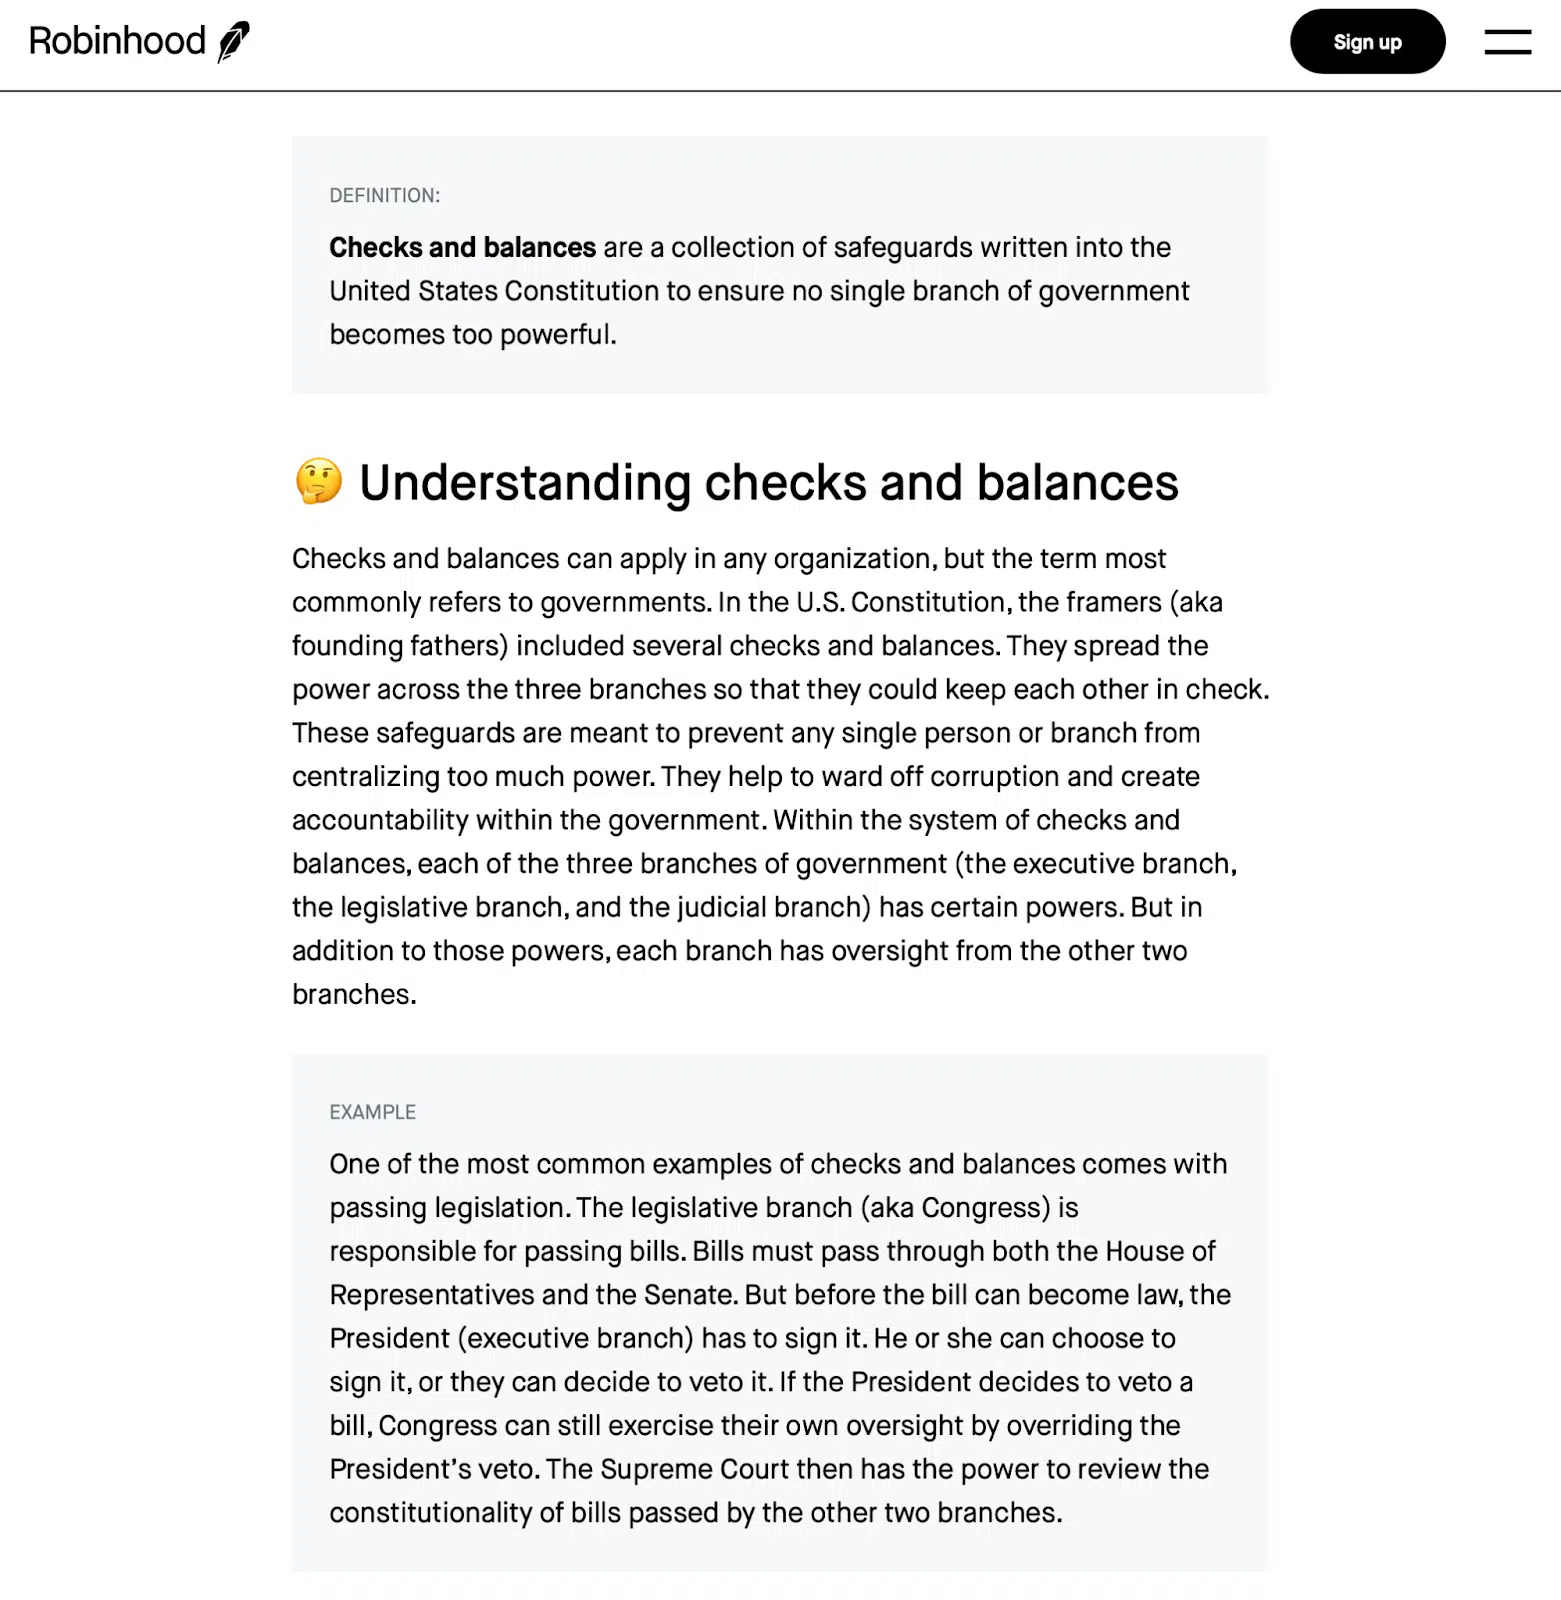 Robinhood article on checks and balances